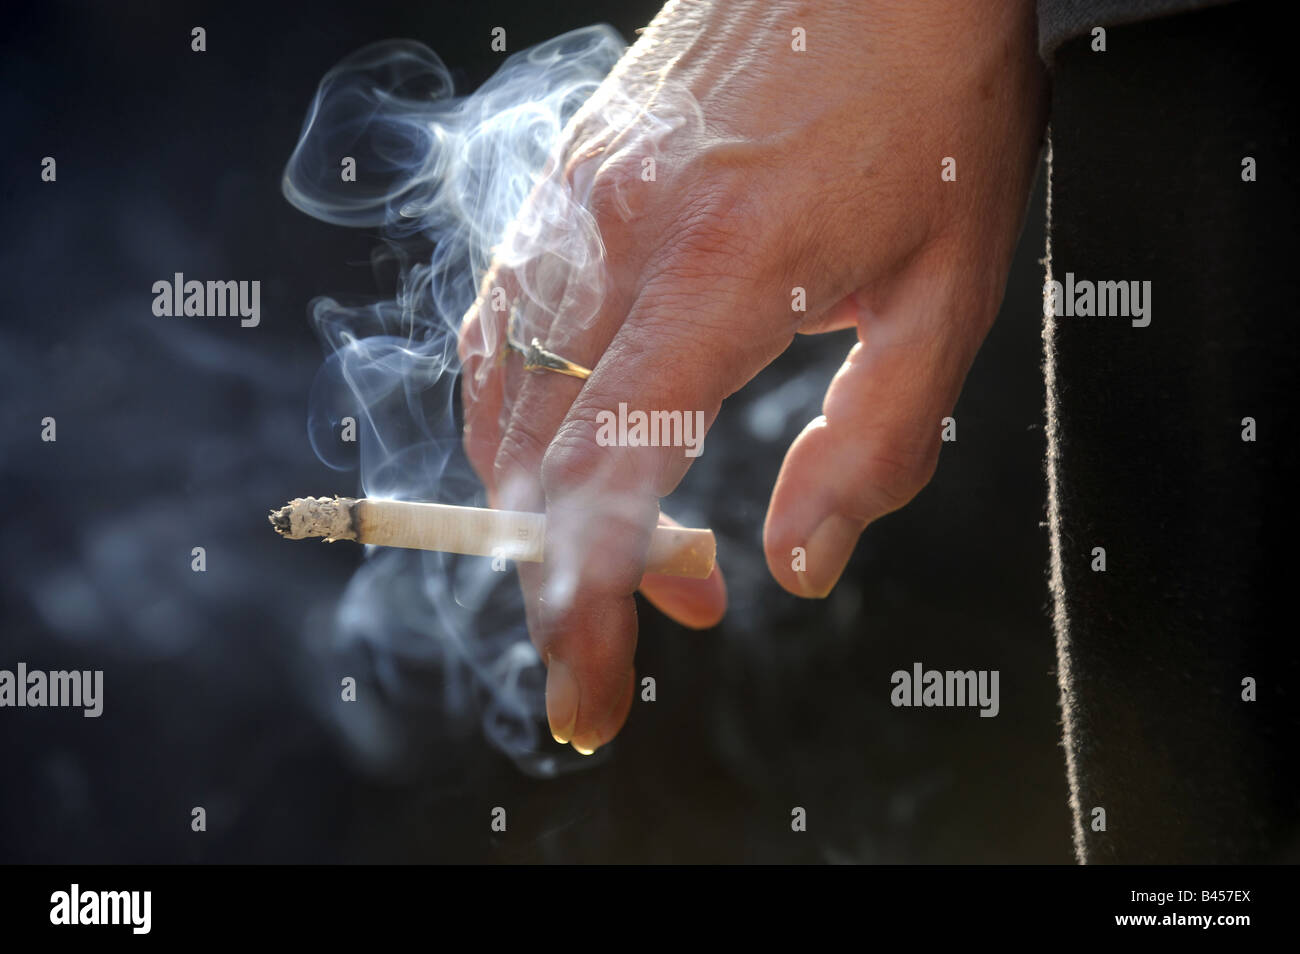 Un acceso il fumo di sigaretta in una mano WOMANS.RE salute sano stile di vita una malattia polmonare polmoni fumatori ospedali UK Cancer Foto Stock